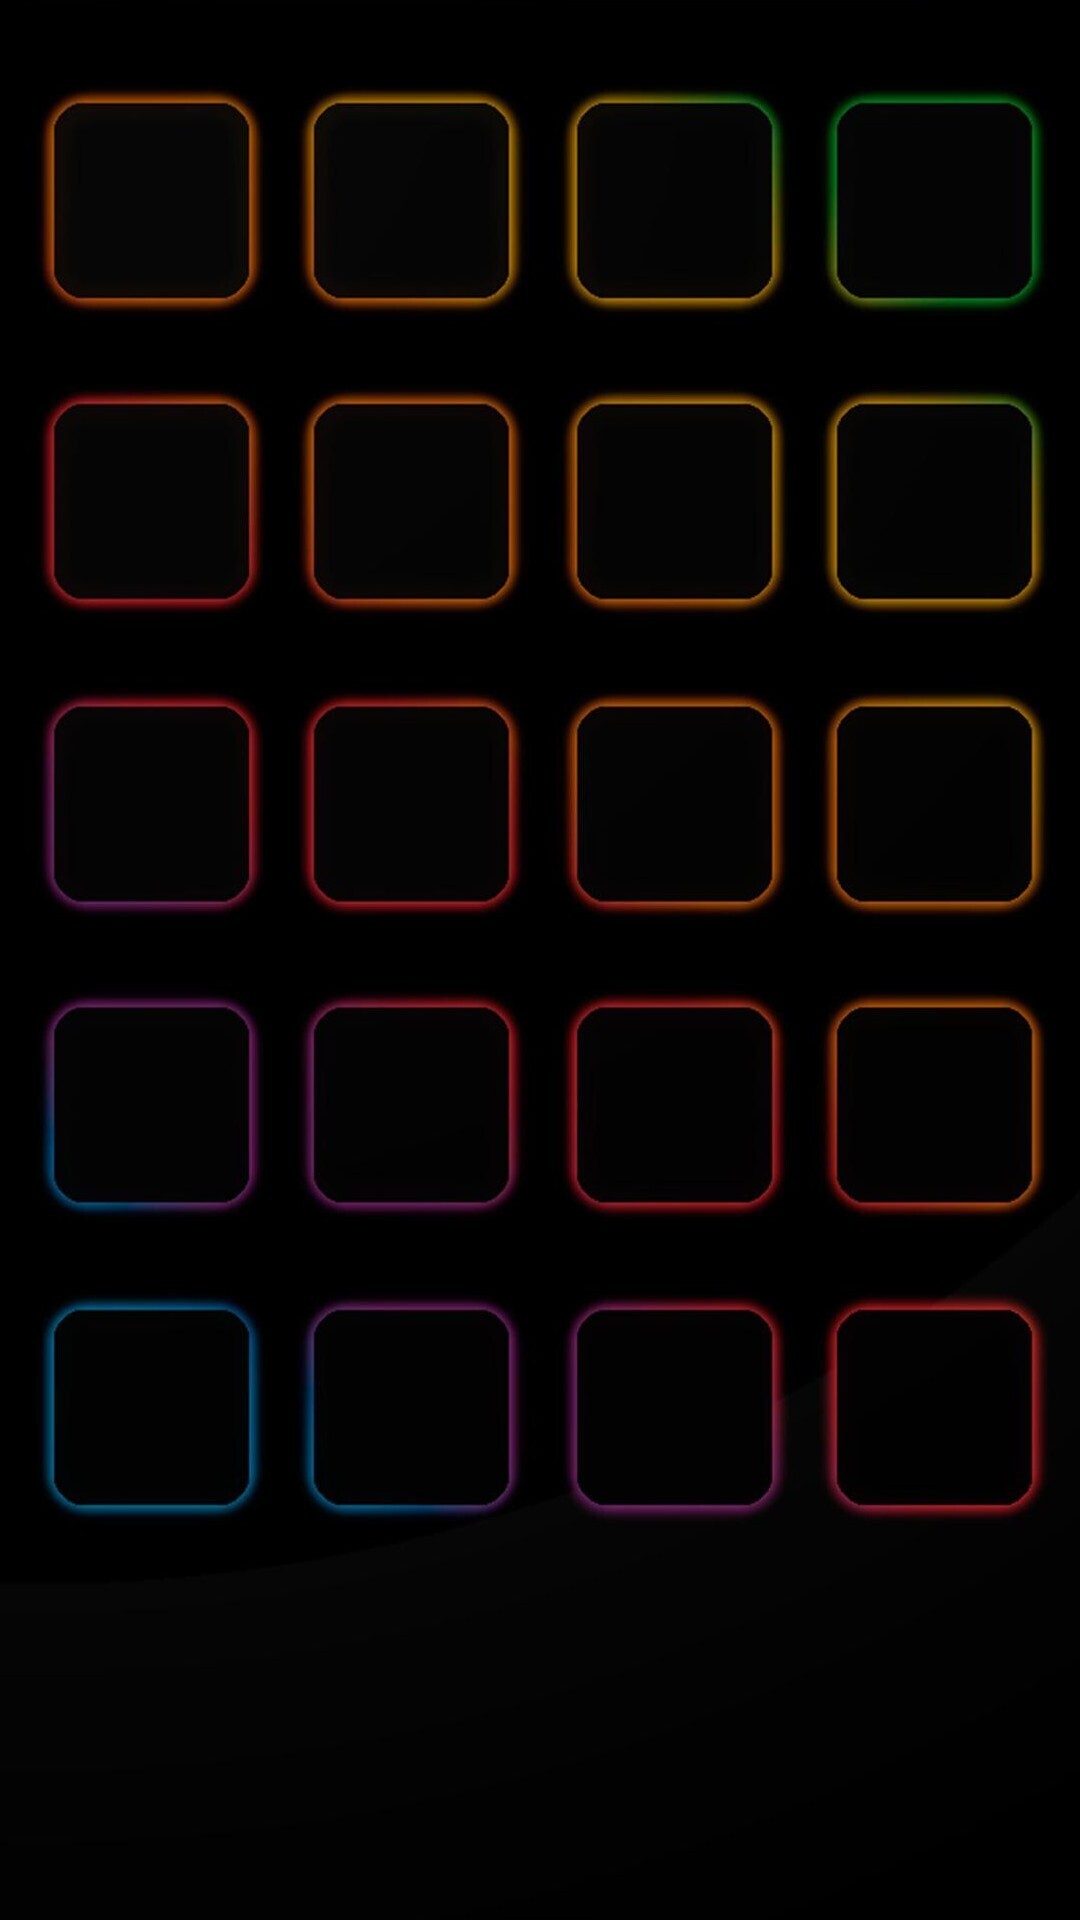 Hình nền động (Live Wallpaper) cho iPhone chất lượng 4K đẹp y như thật